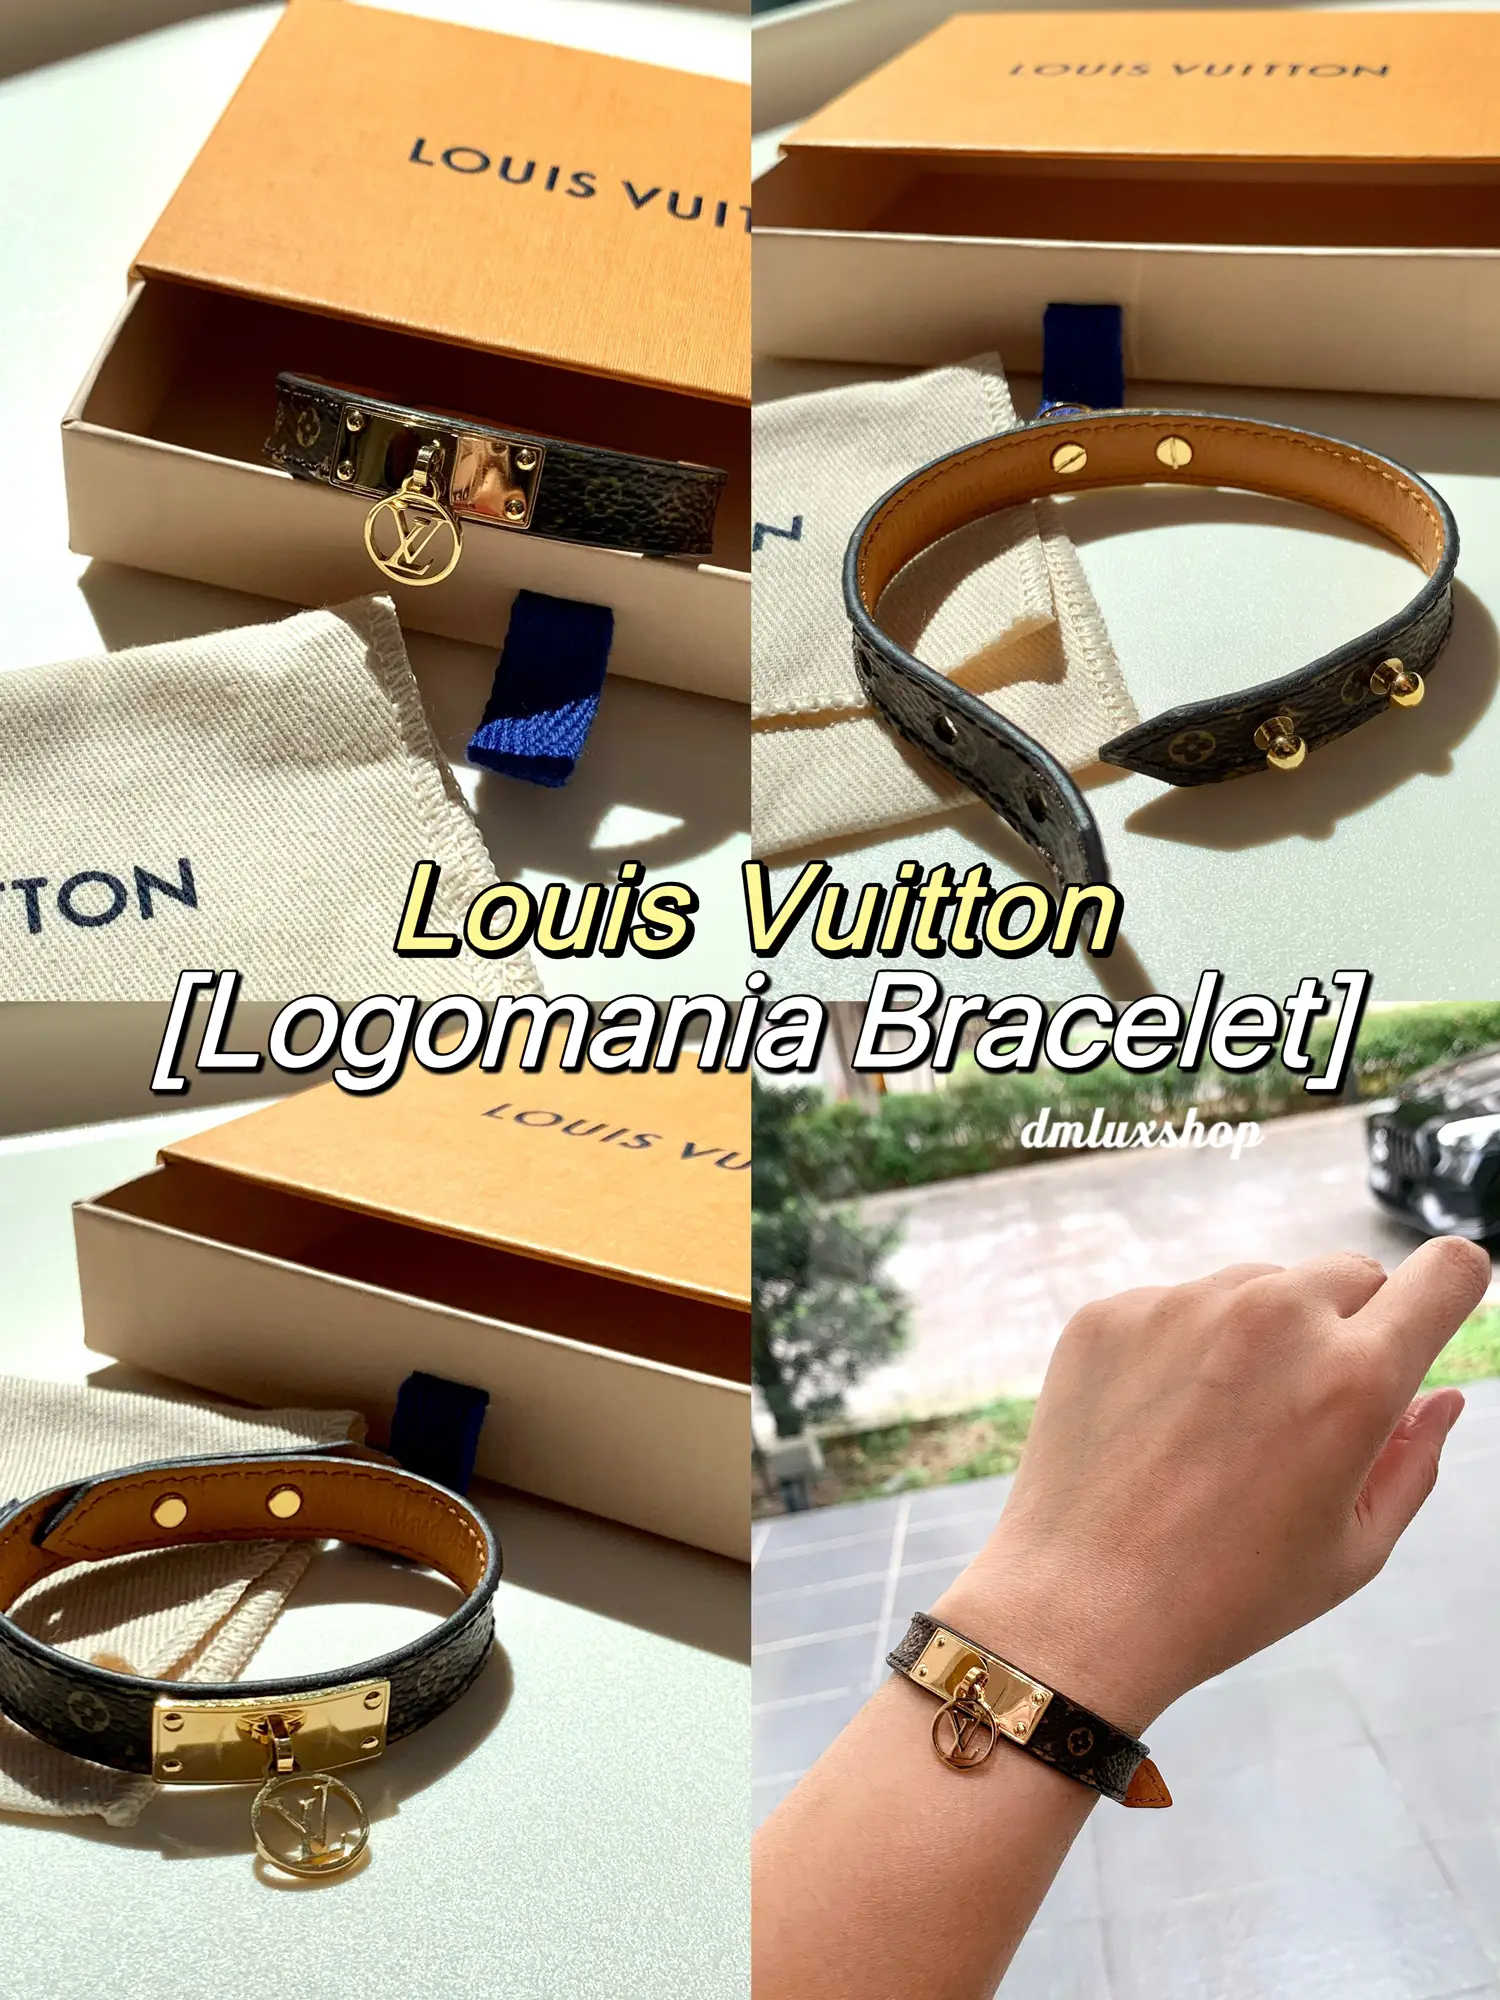 🇲🇾Louis Vuitton Logomania Bracelet, Gallery posted by DM Luxshop